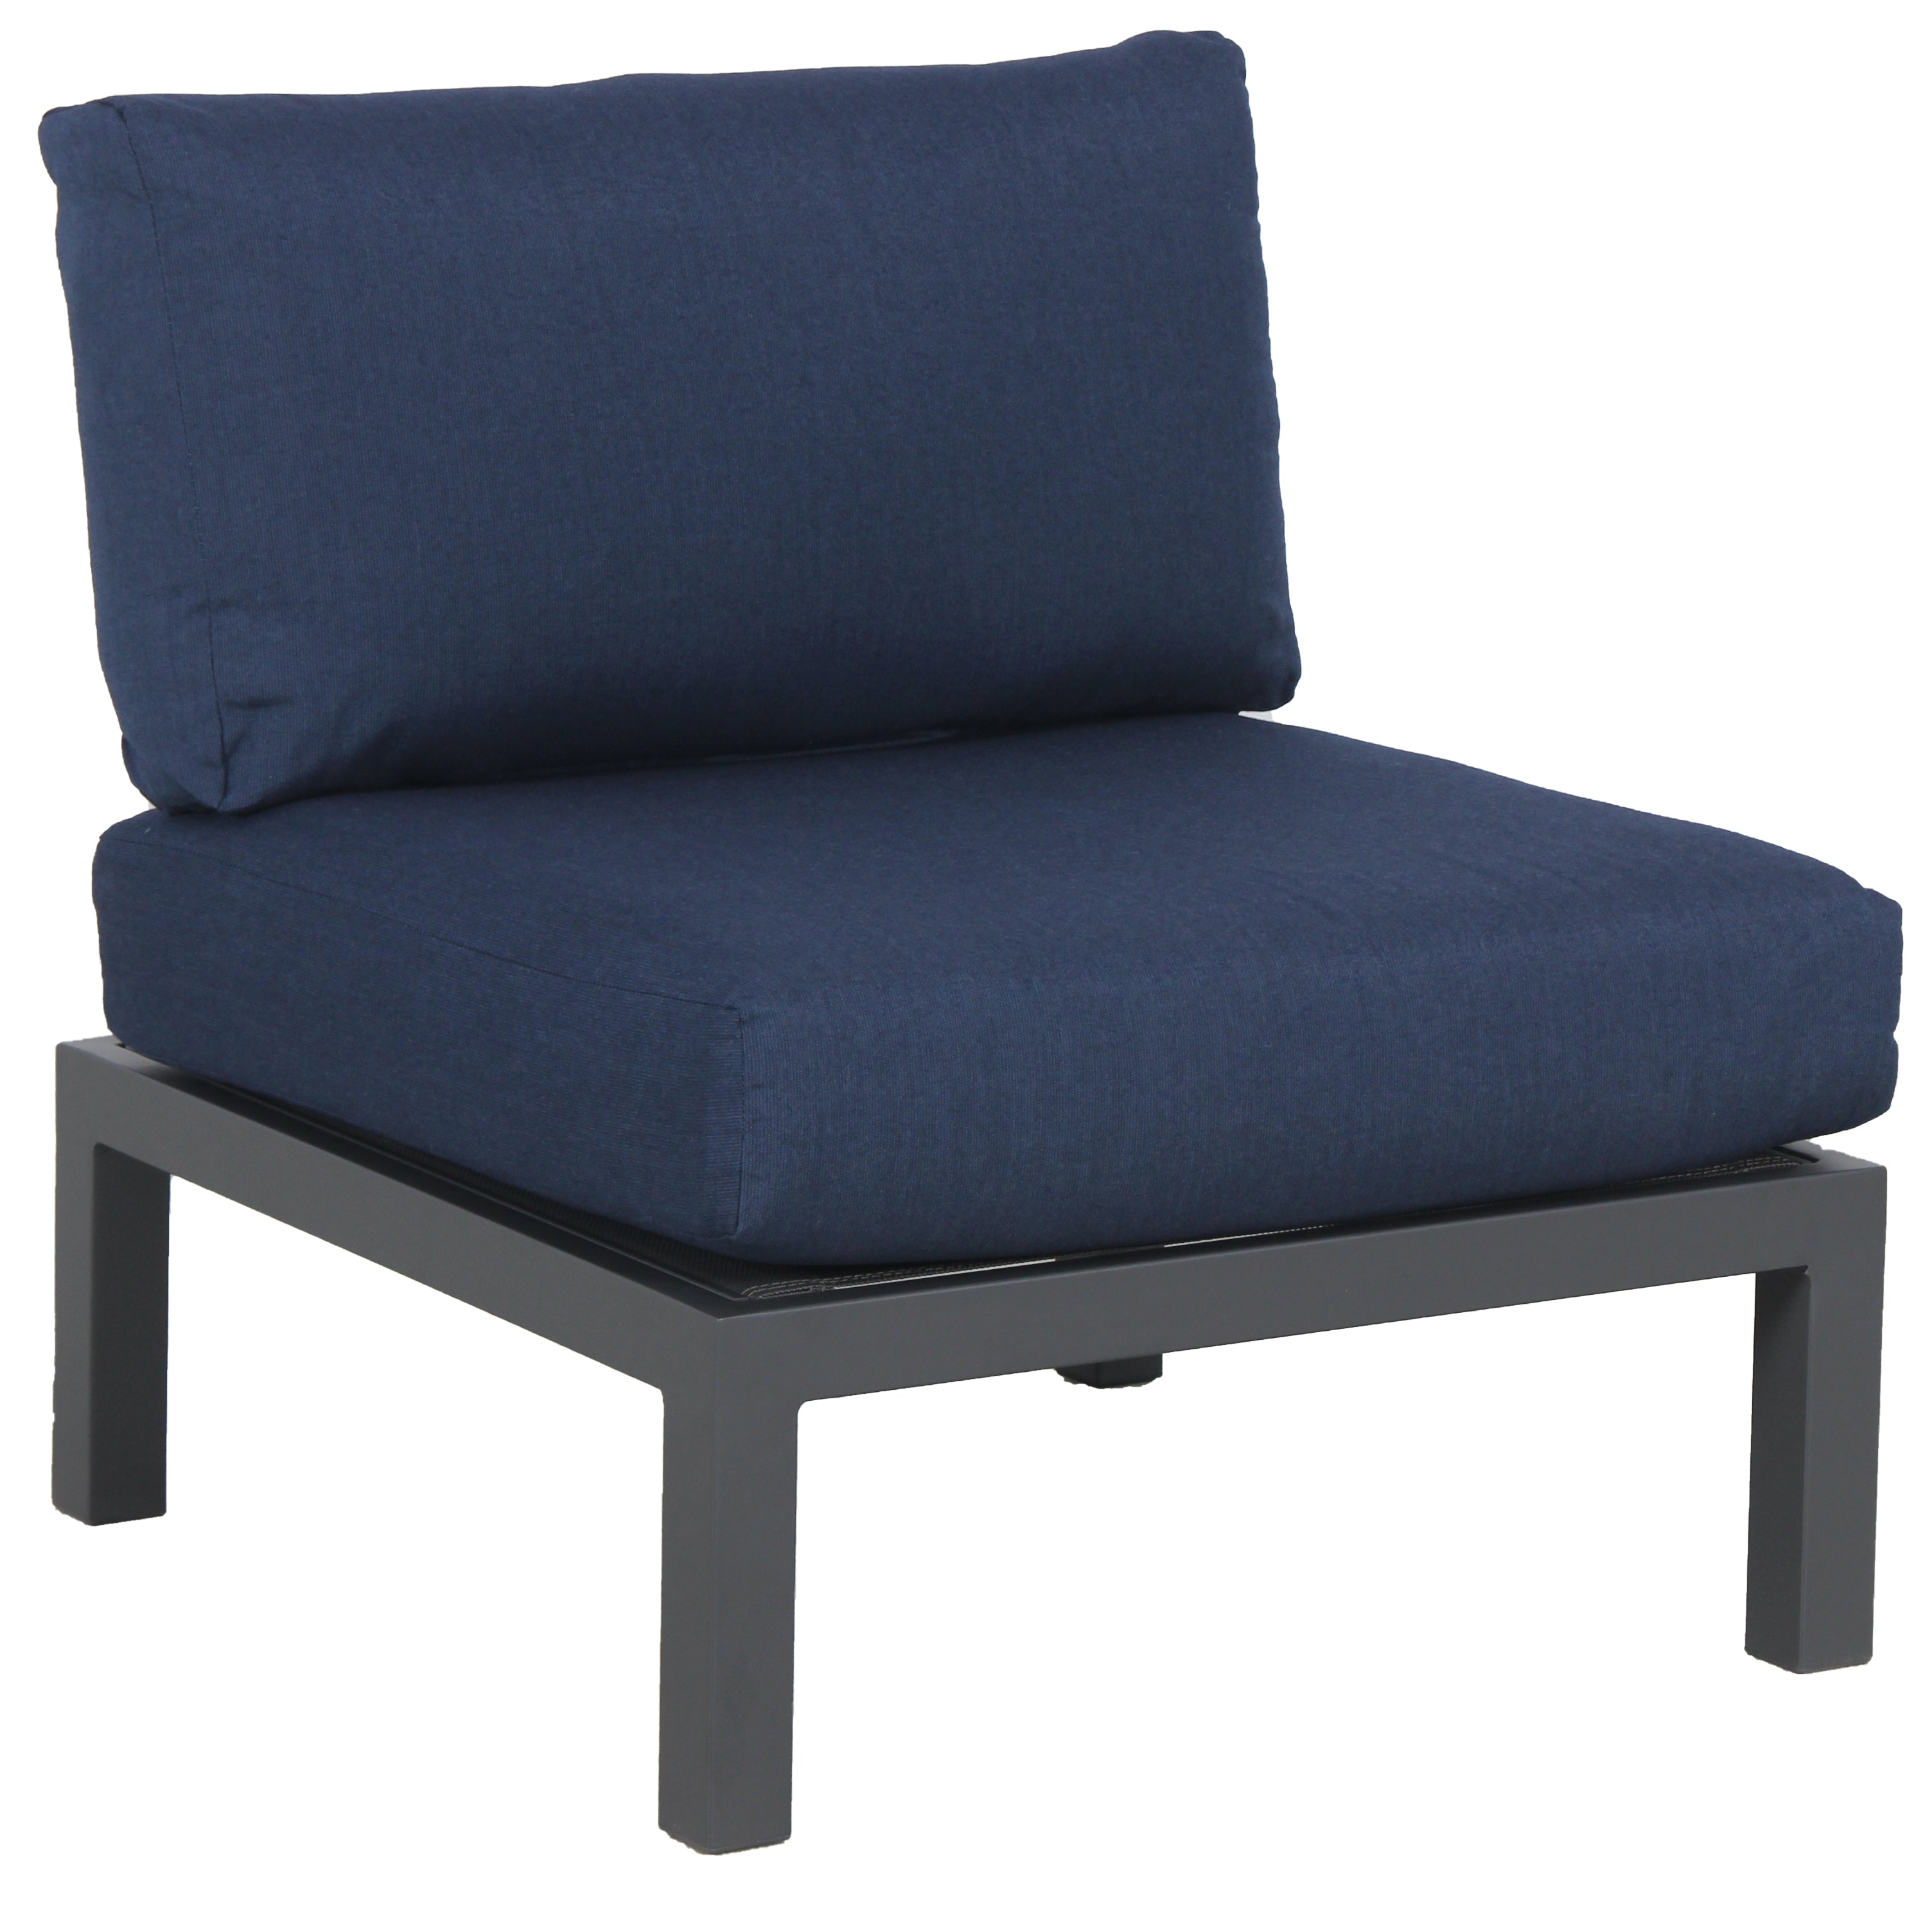 Elba Aluminum Armless Lounge Chair With Cushion